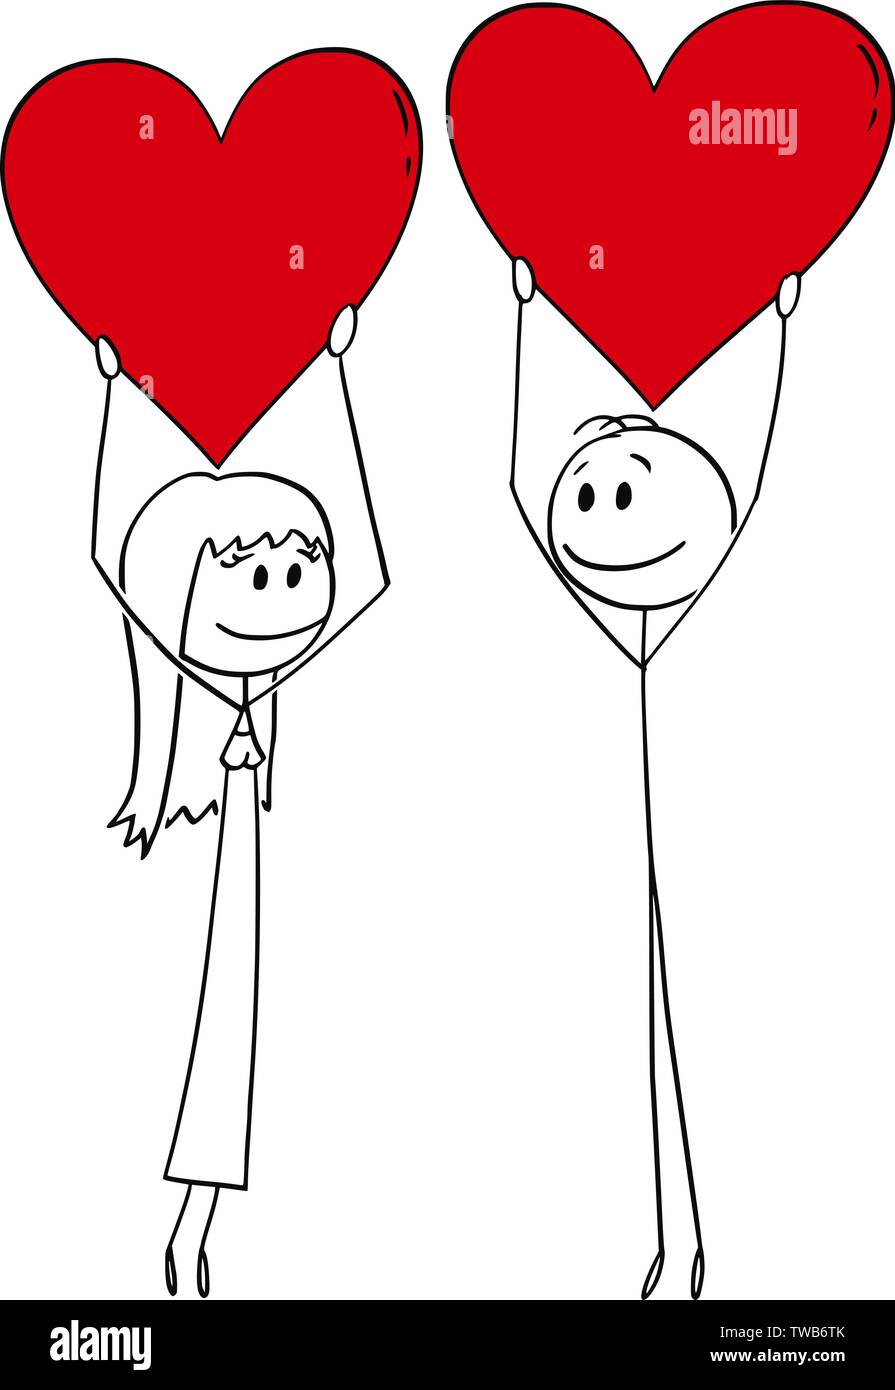 Vektor cartoon Strichmännchen Zeichnen konzeptionelle Darstellung der heterosexuellen Paaren von Mann und Frau am Tag halten Große rote Herzen. Stock Vektor